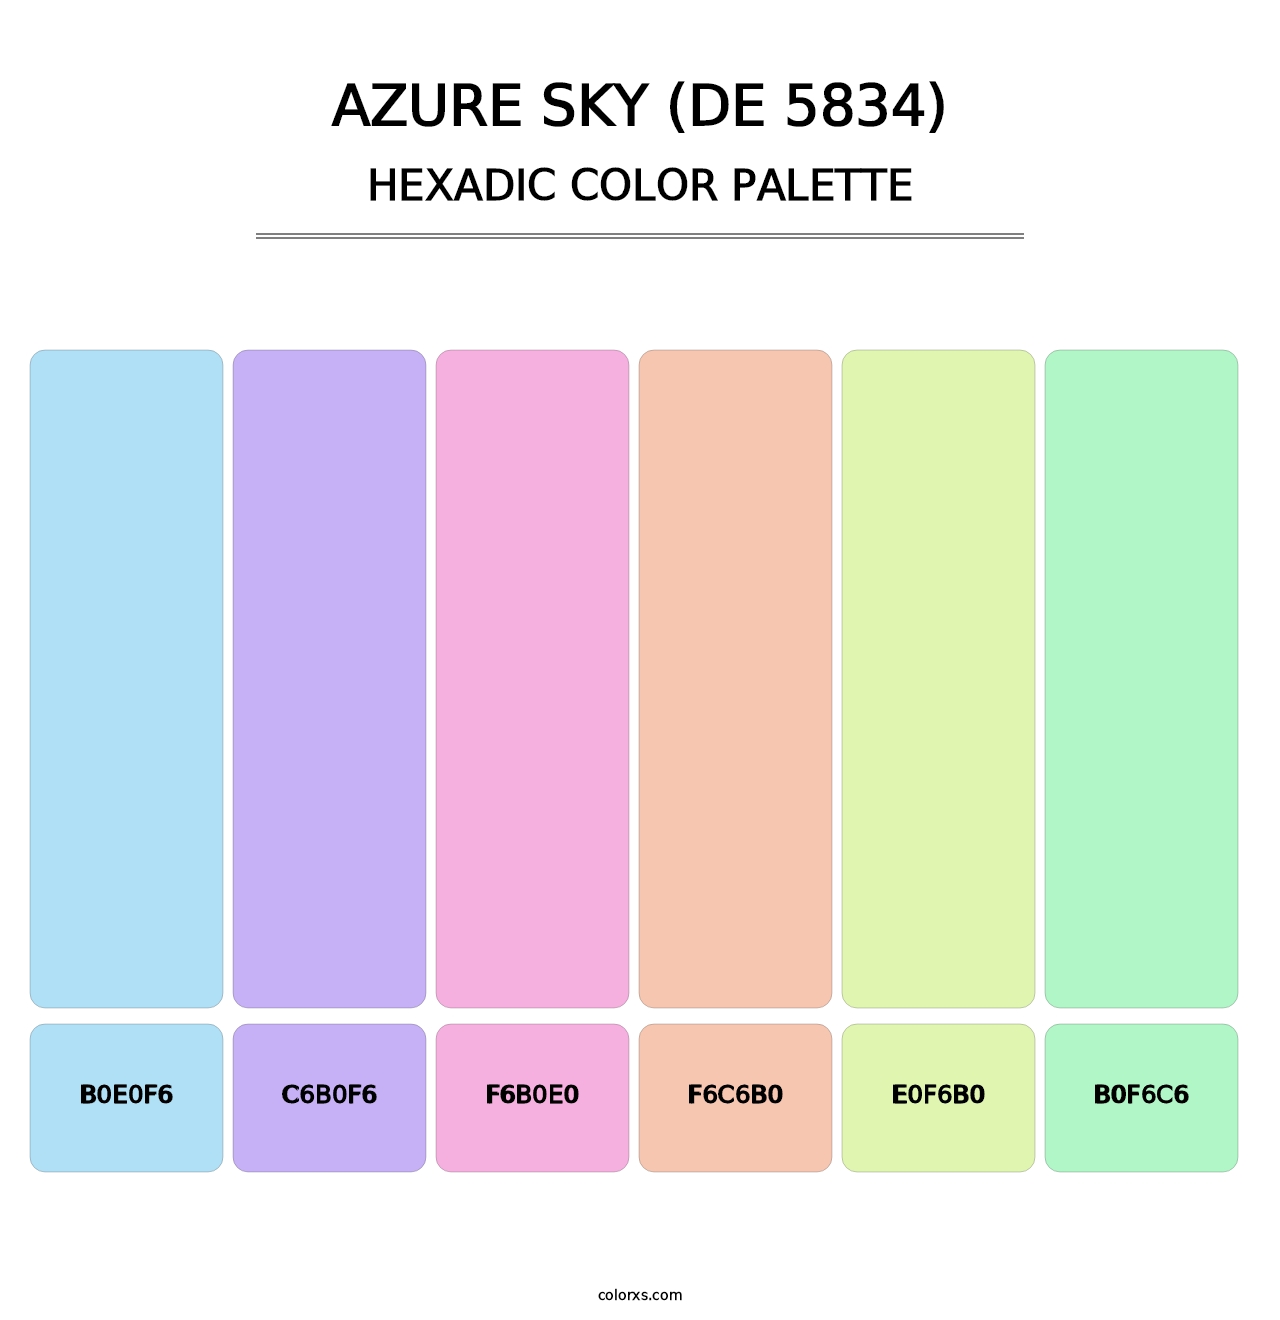 Azure Sky (DE 5834) - Hexadic Color Palette